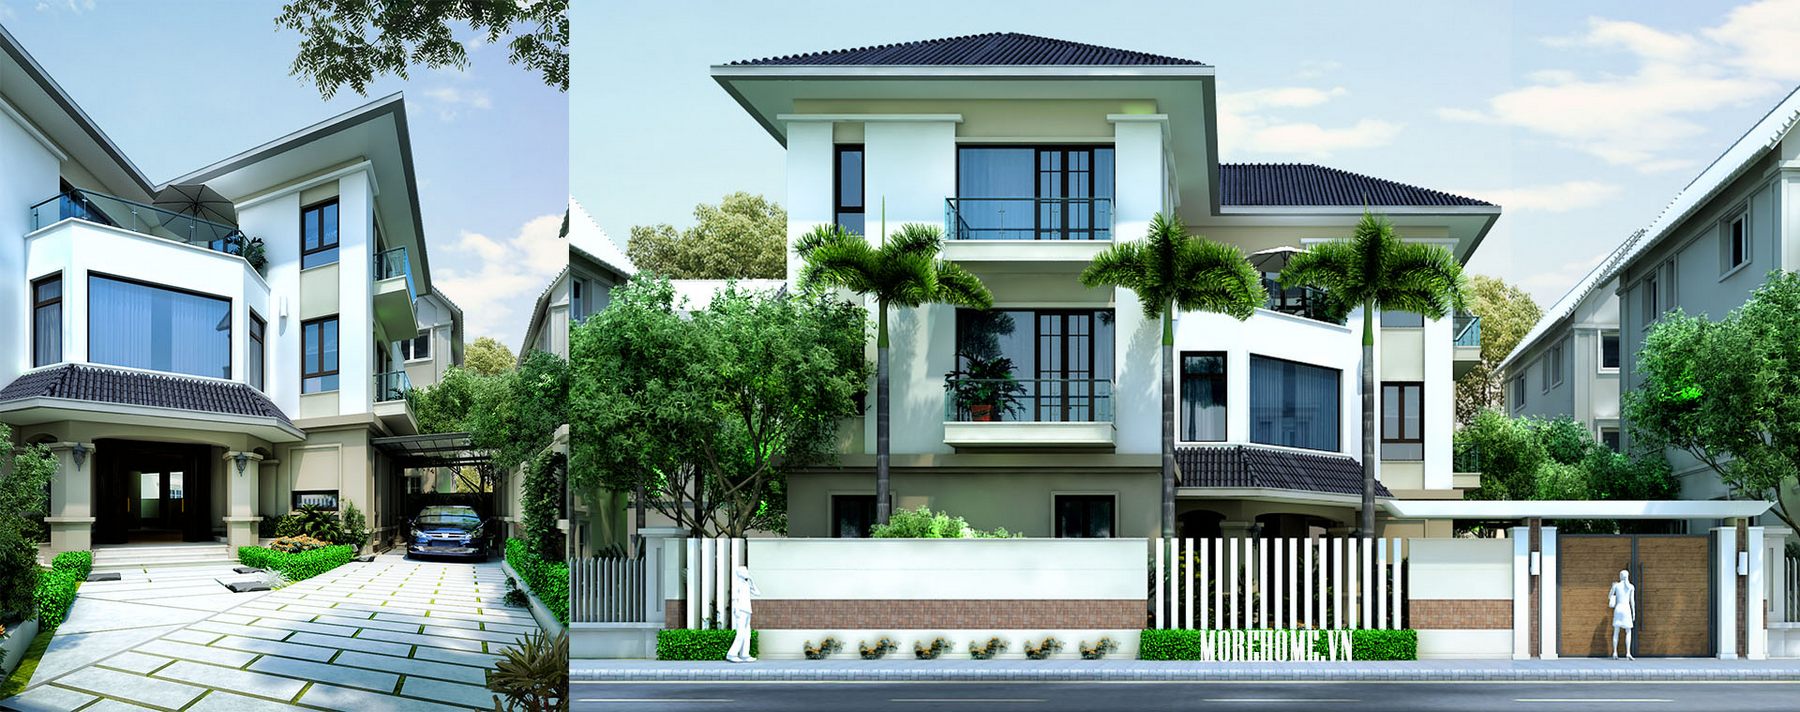 Thiết kế nhà biệt thự vườn 3 tầng hiện đại, đẹp tại Móng Cái Quảng Ninh